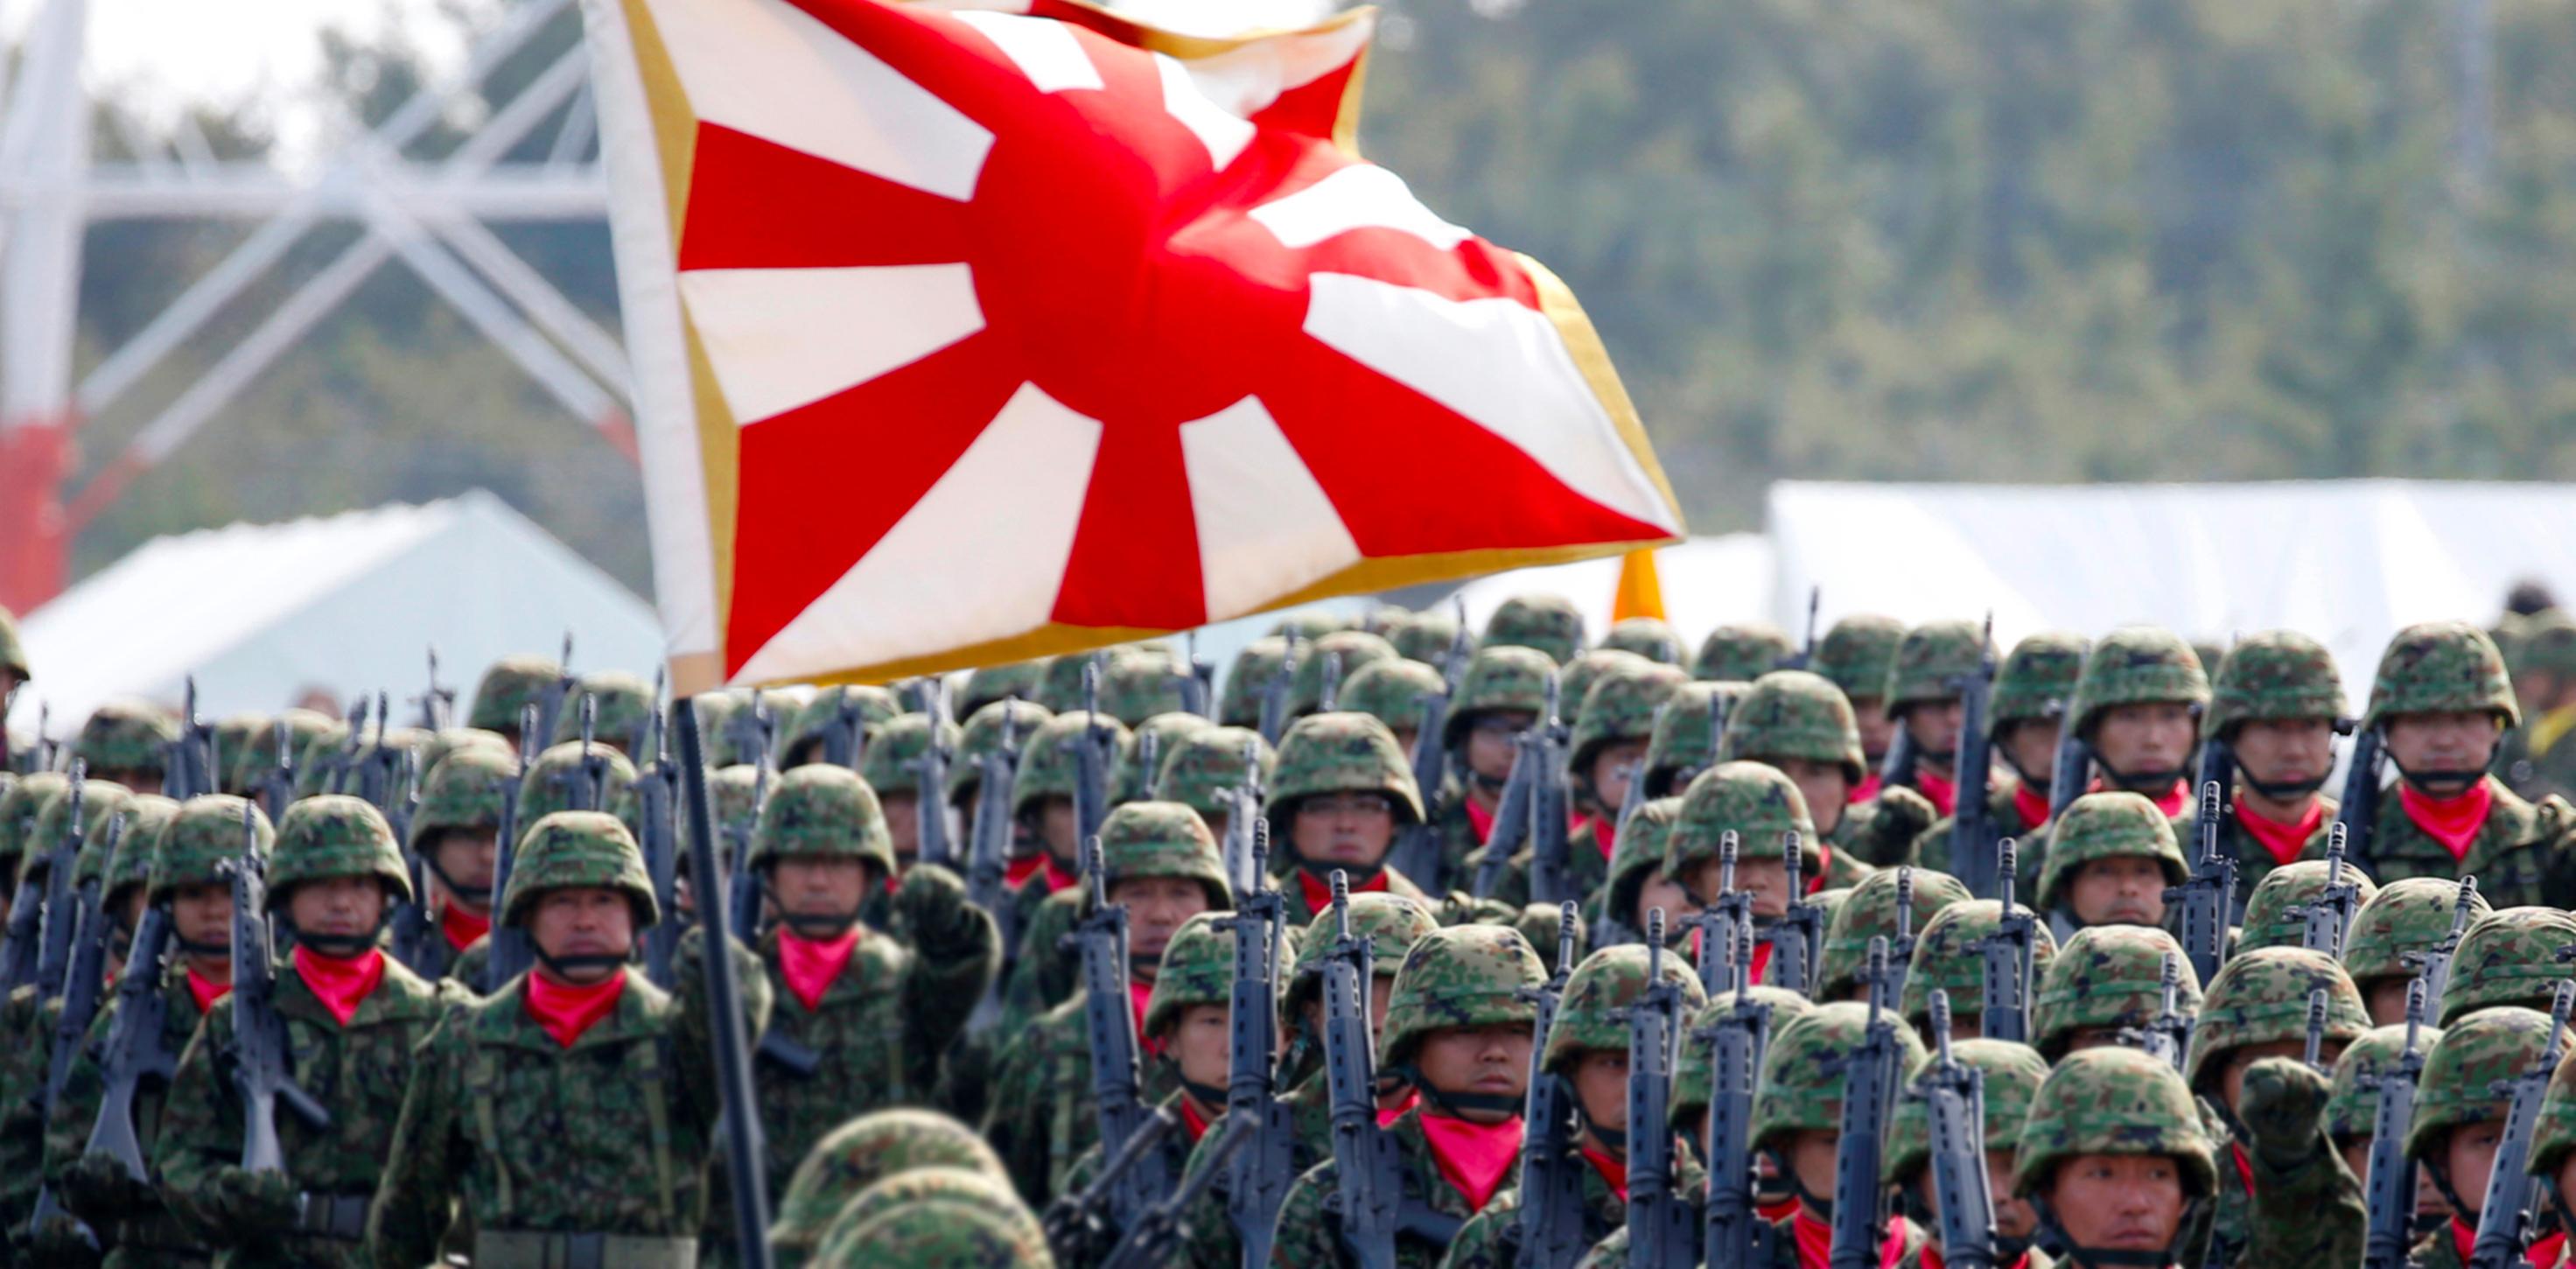 لماذا طرحت اليابان مبادرة مساعدات الأمن؟